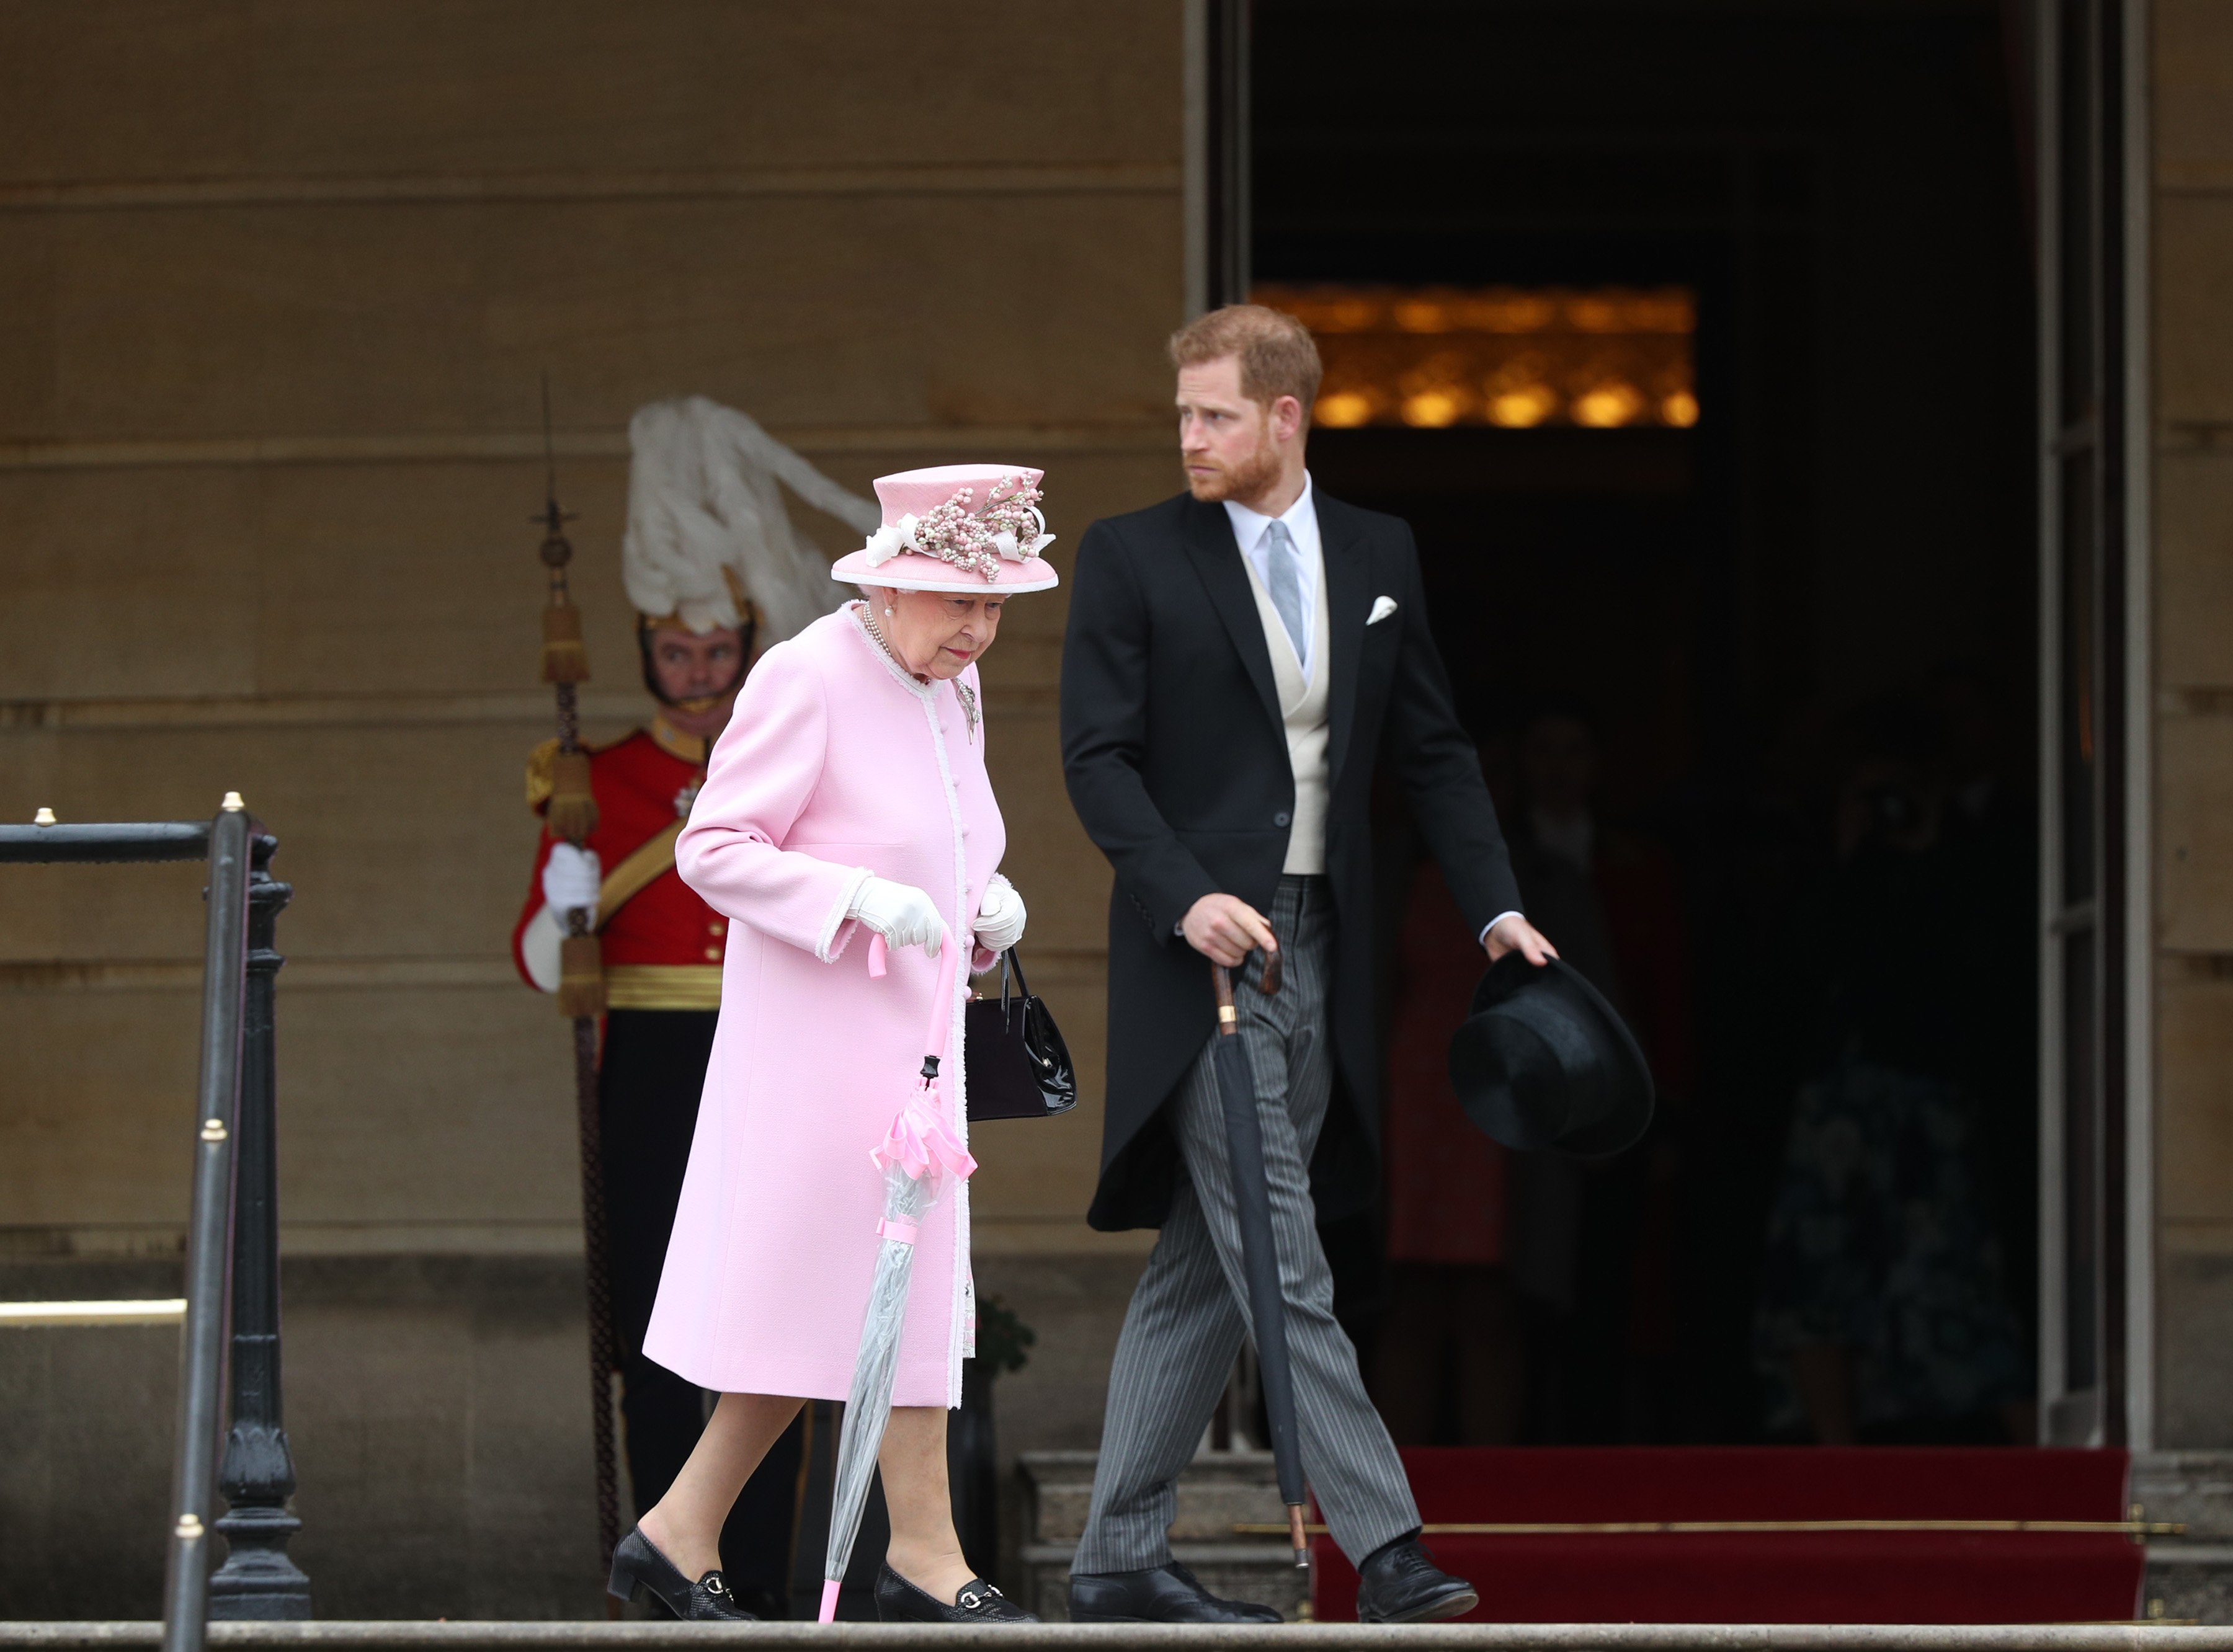 Königin Elizabeth II. und Prinz Harry, Herzog von Sussex, besuchen die Royal Garden Party im Buckingham Palace am 29. Mai 2019 in London, England | Quelle: Getty Images